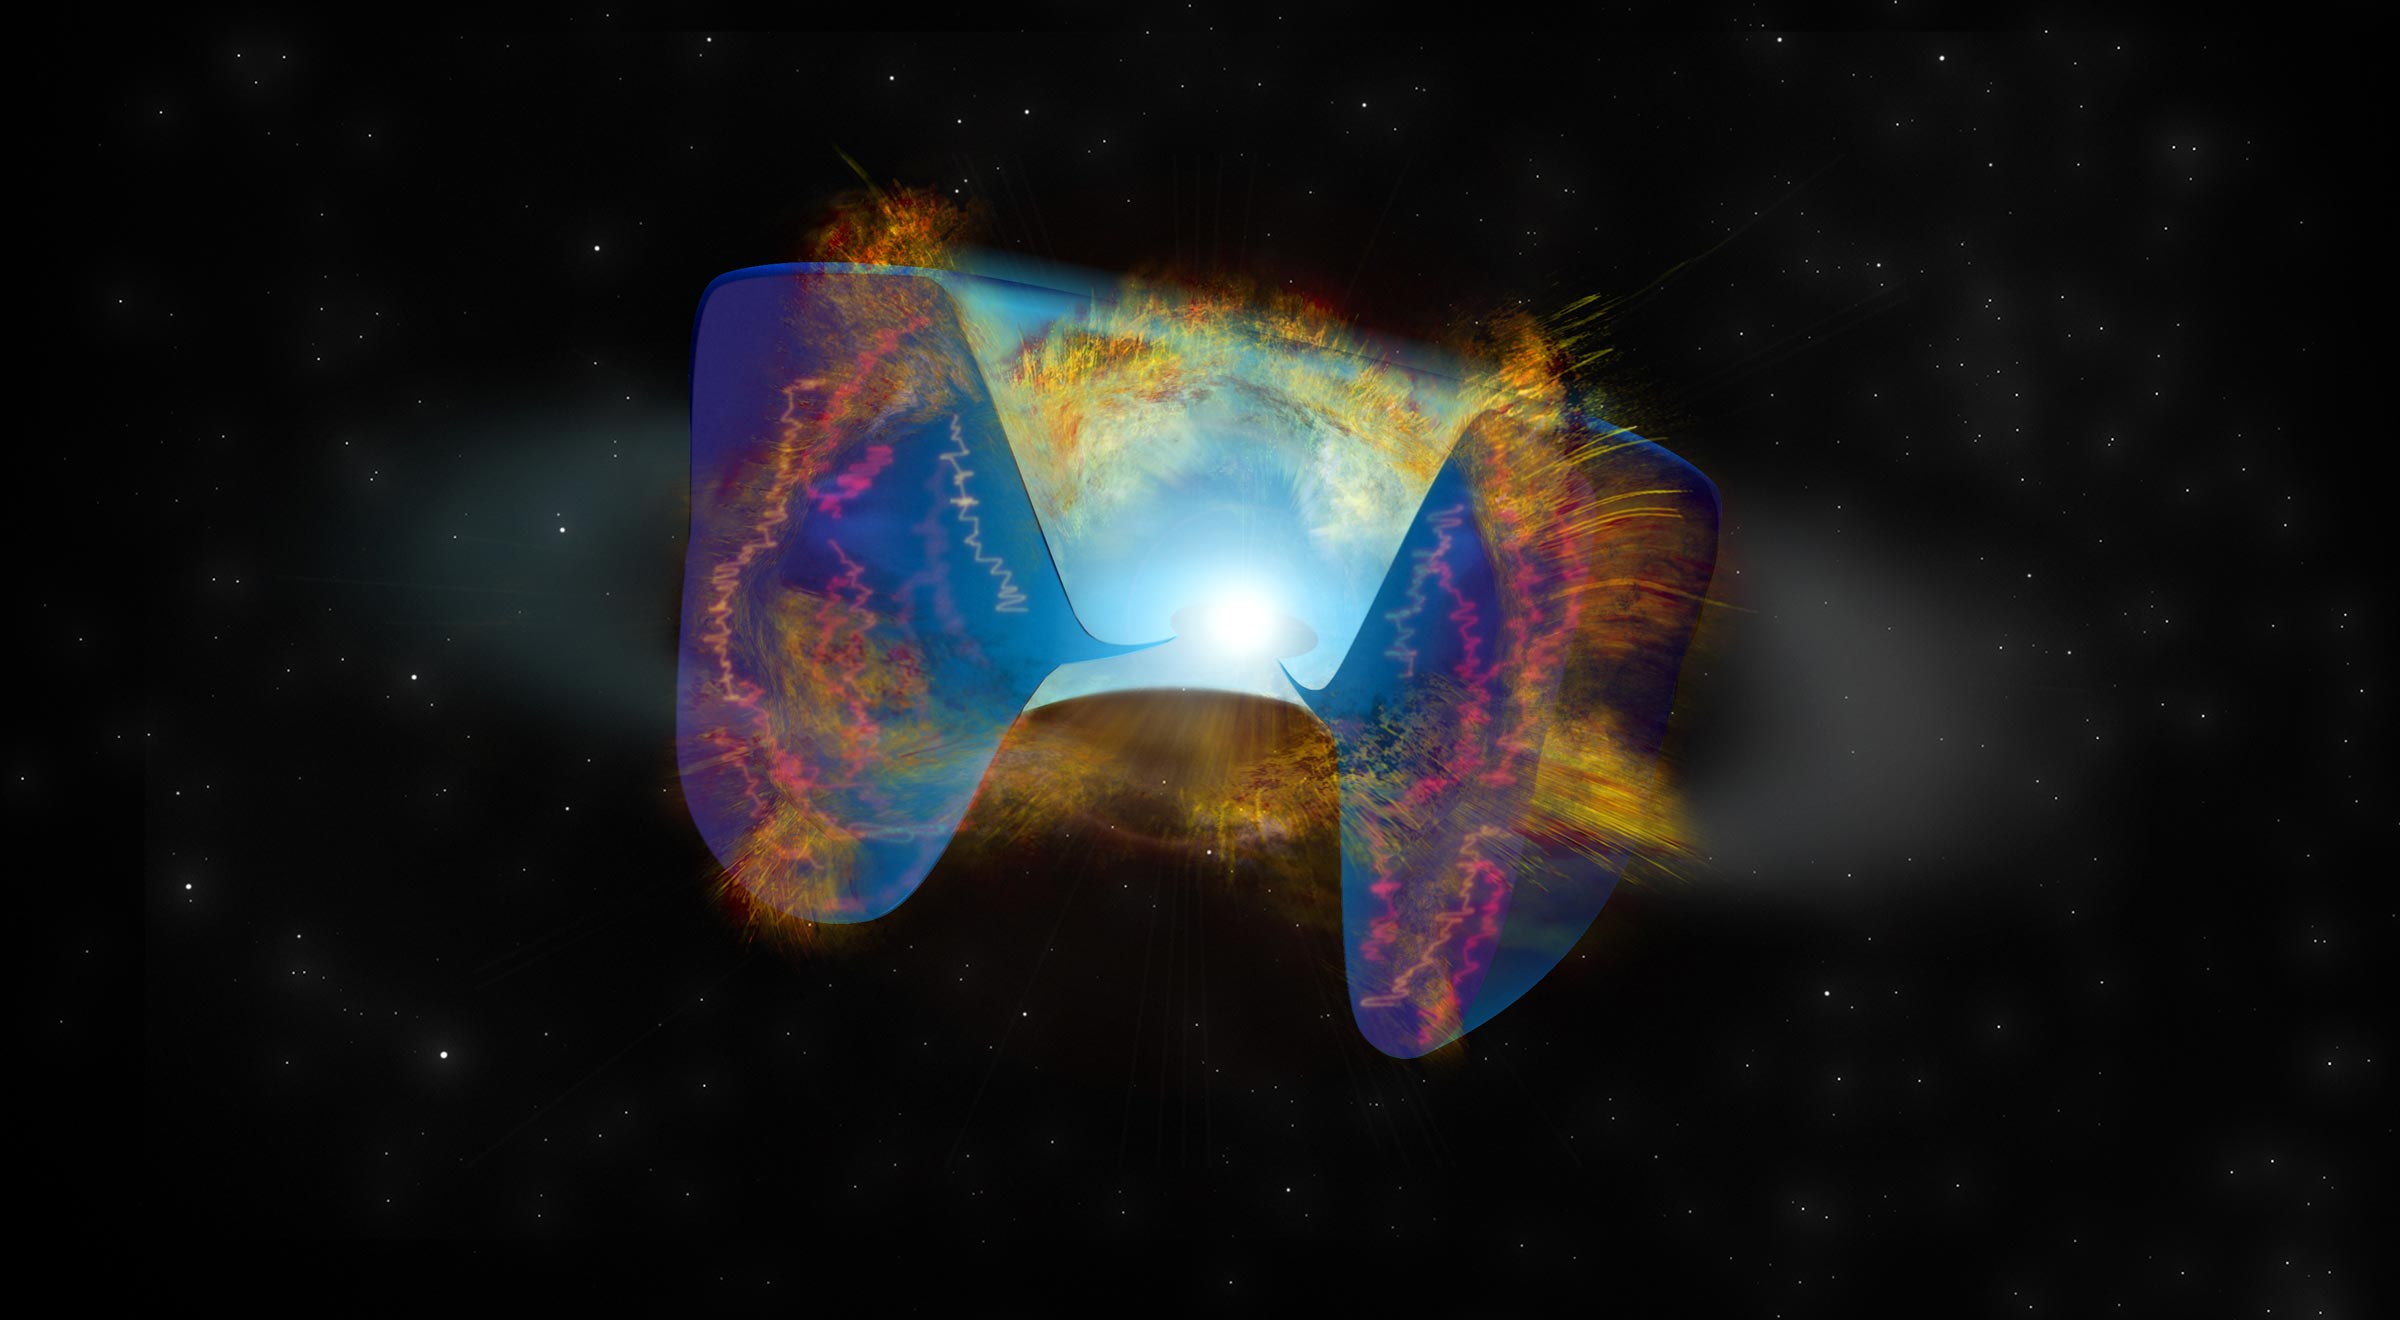 Mội siêu tân tinh được phát hiện sau vụ va chạm giữa các thiên hà